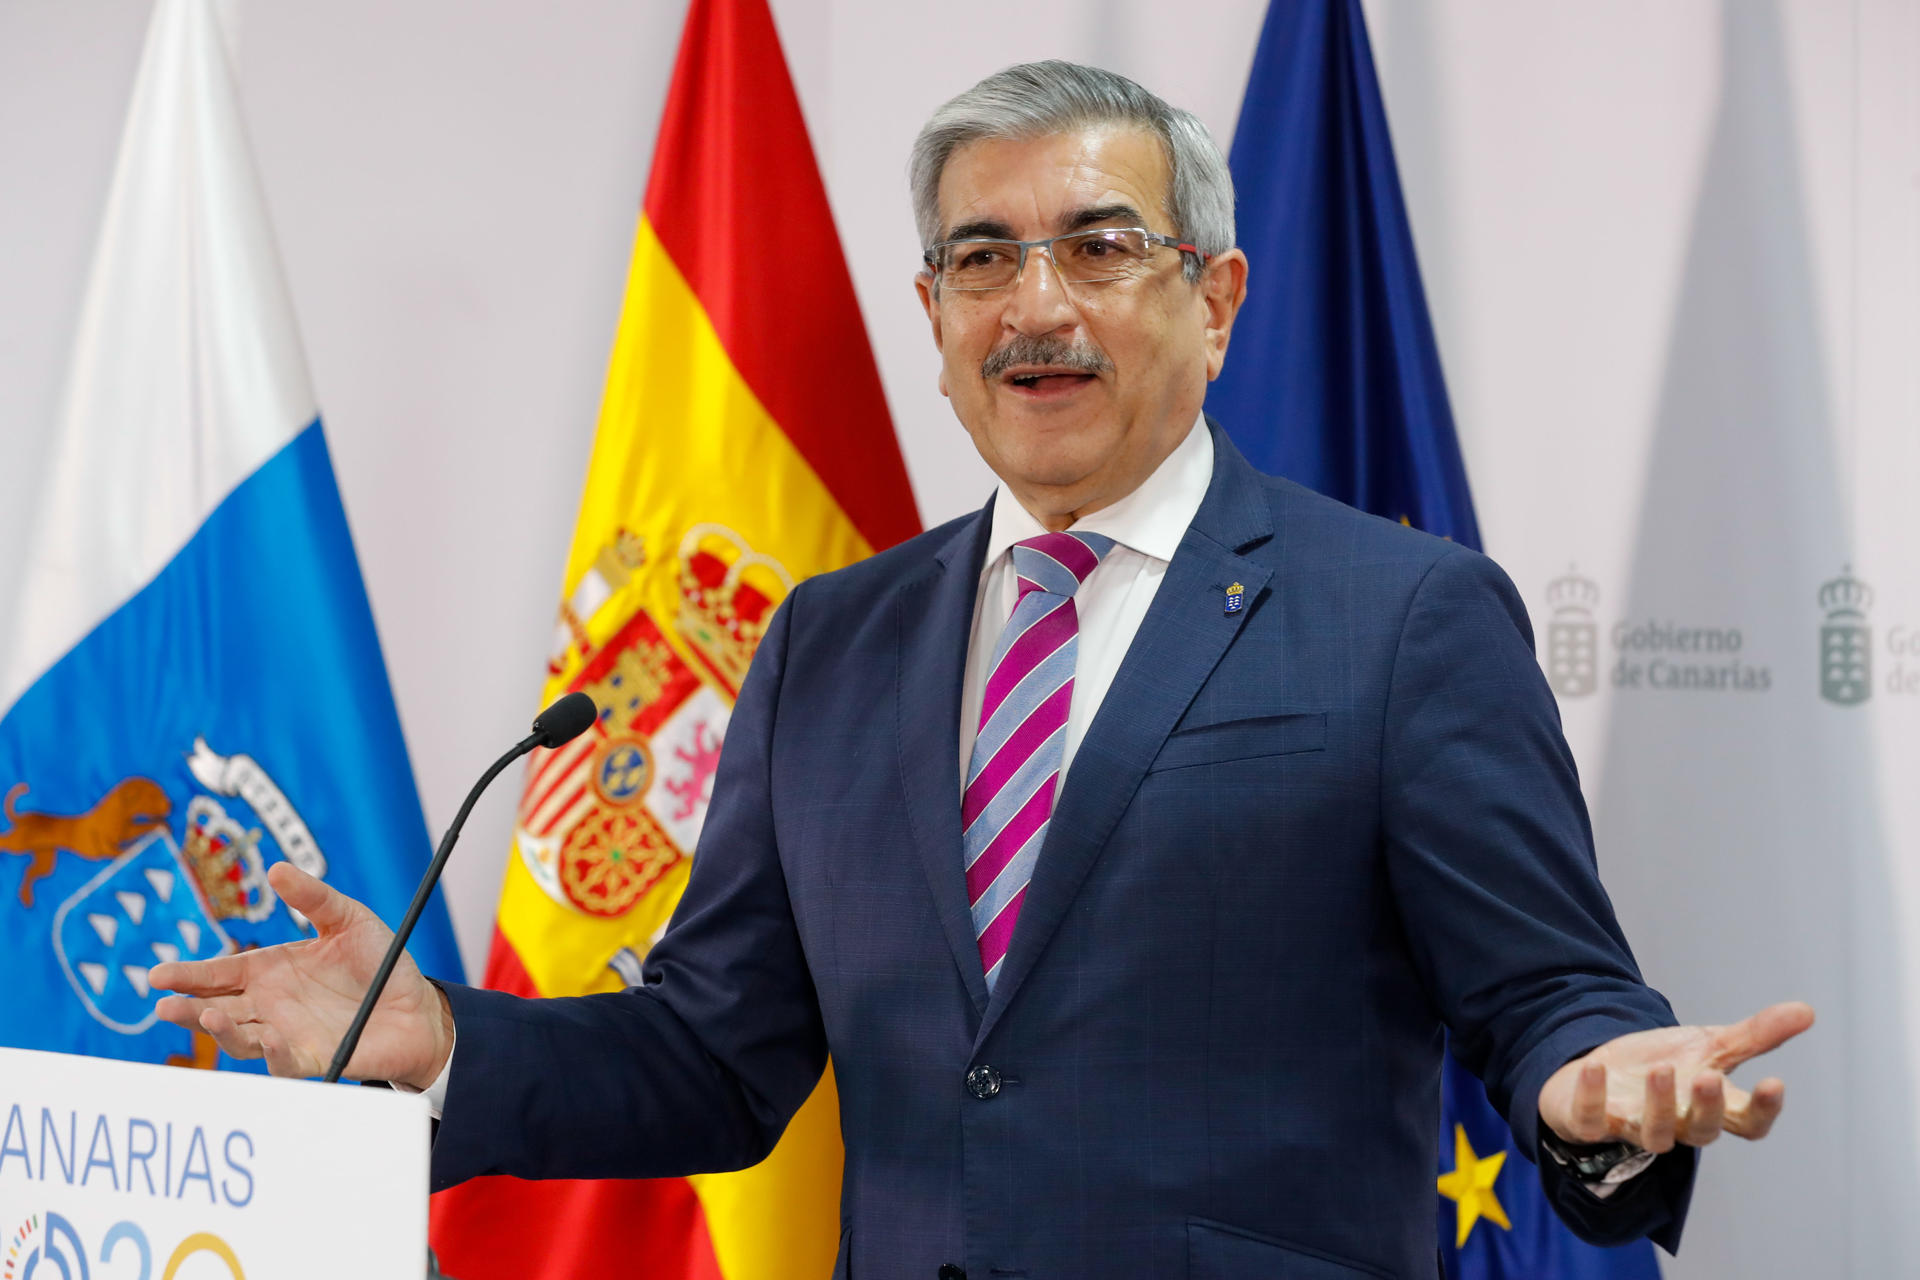 El vicepresidente del Gobierno de Canarias, Román Rodríguez, presentó este viernes la memoria de su gestión en esta legislatura al frente de la Consejería de Hacienda, Presupuestos y Asuntos Europeos. EFE